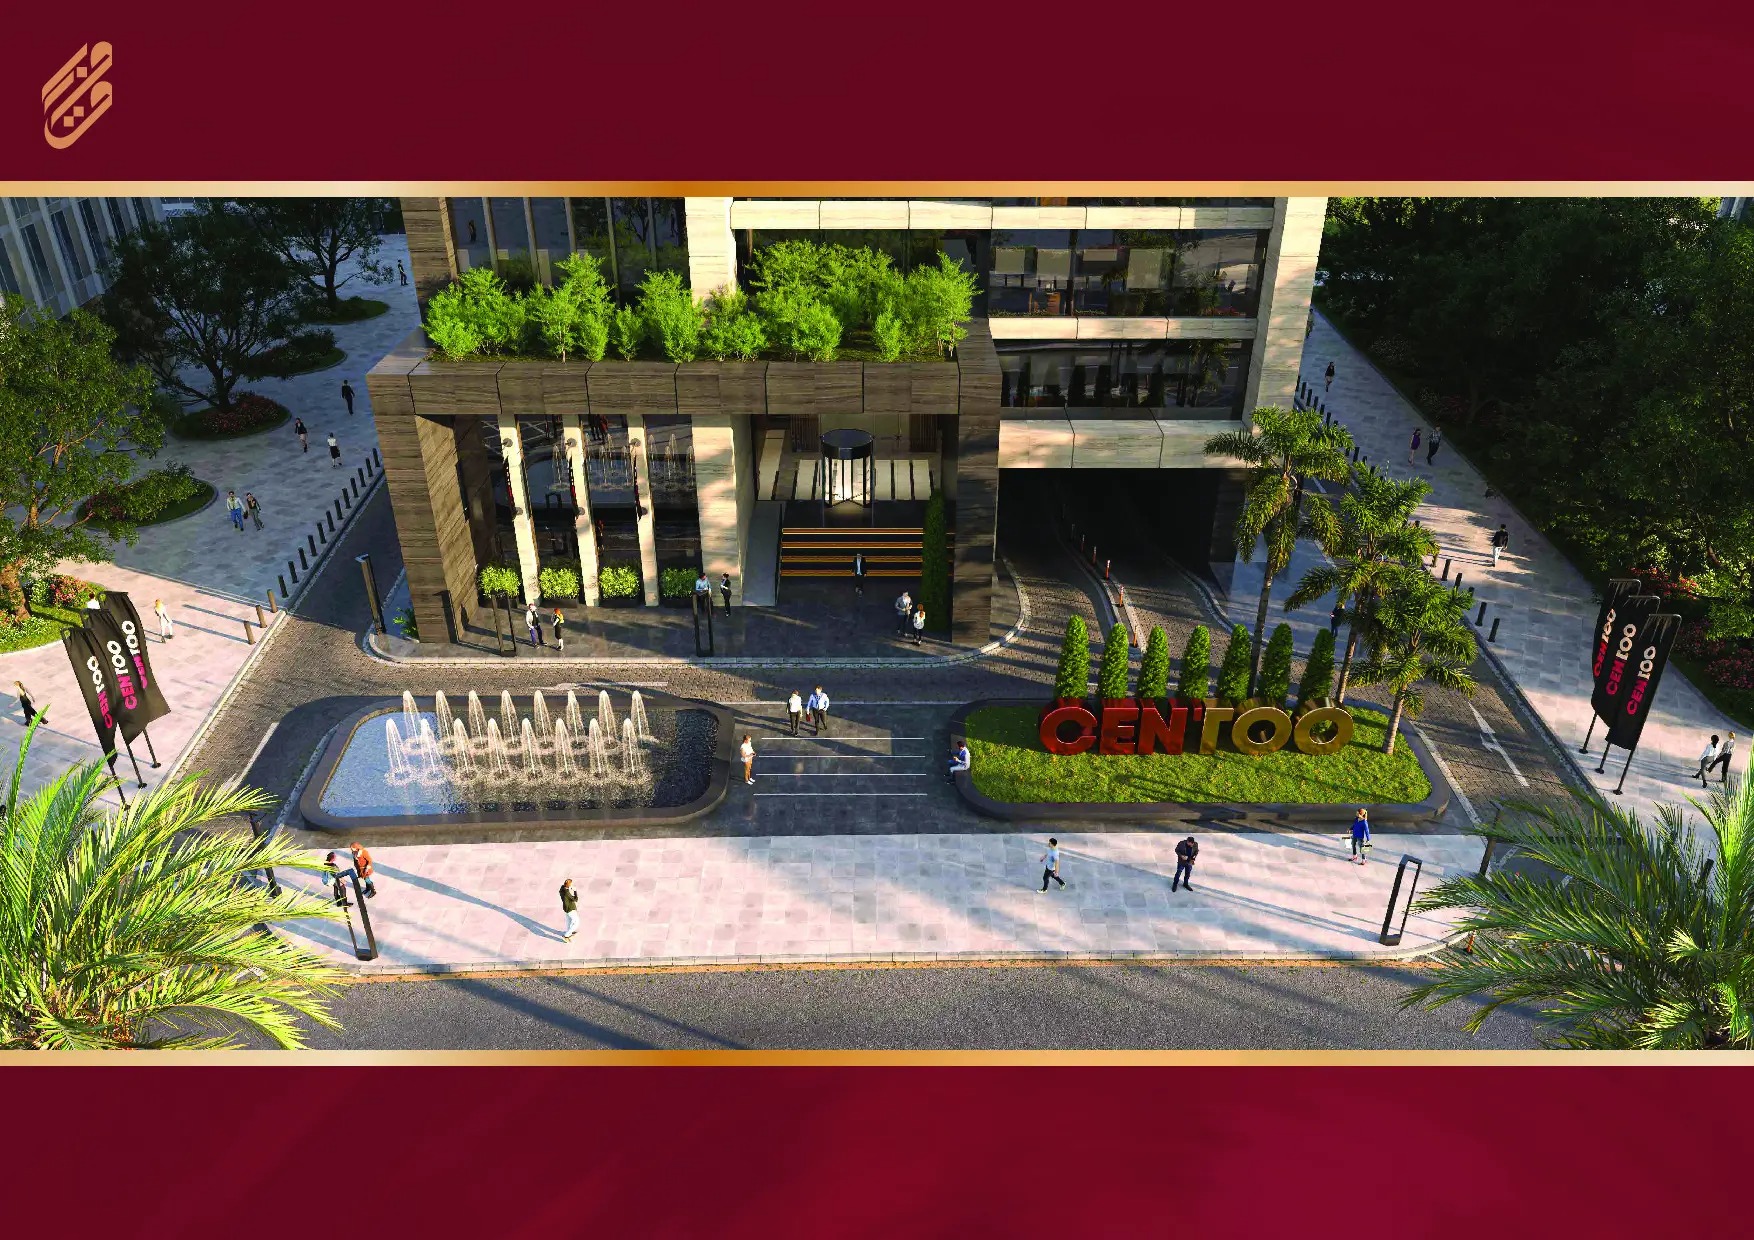 مول سنتو بيزنس العاصمة الإدارية الجديدة بروق – Centoo Business Complex New Capital Mall